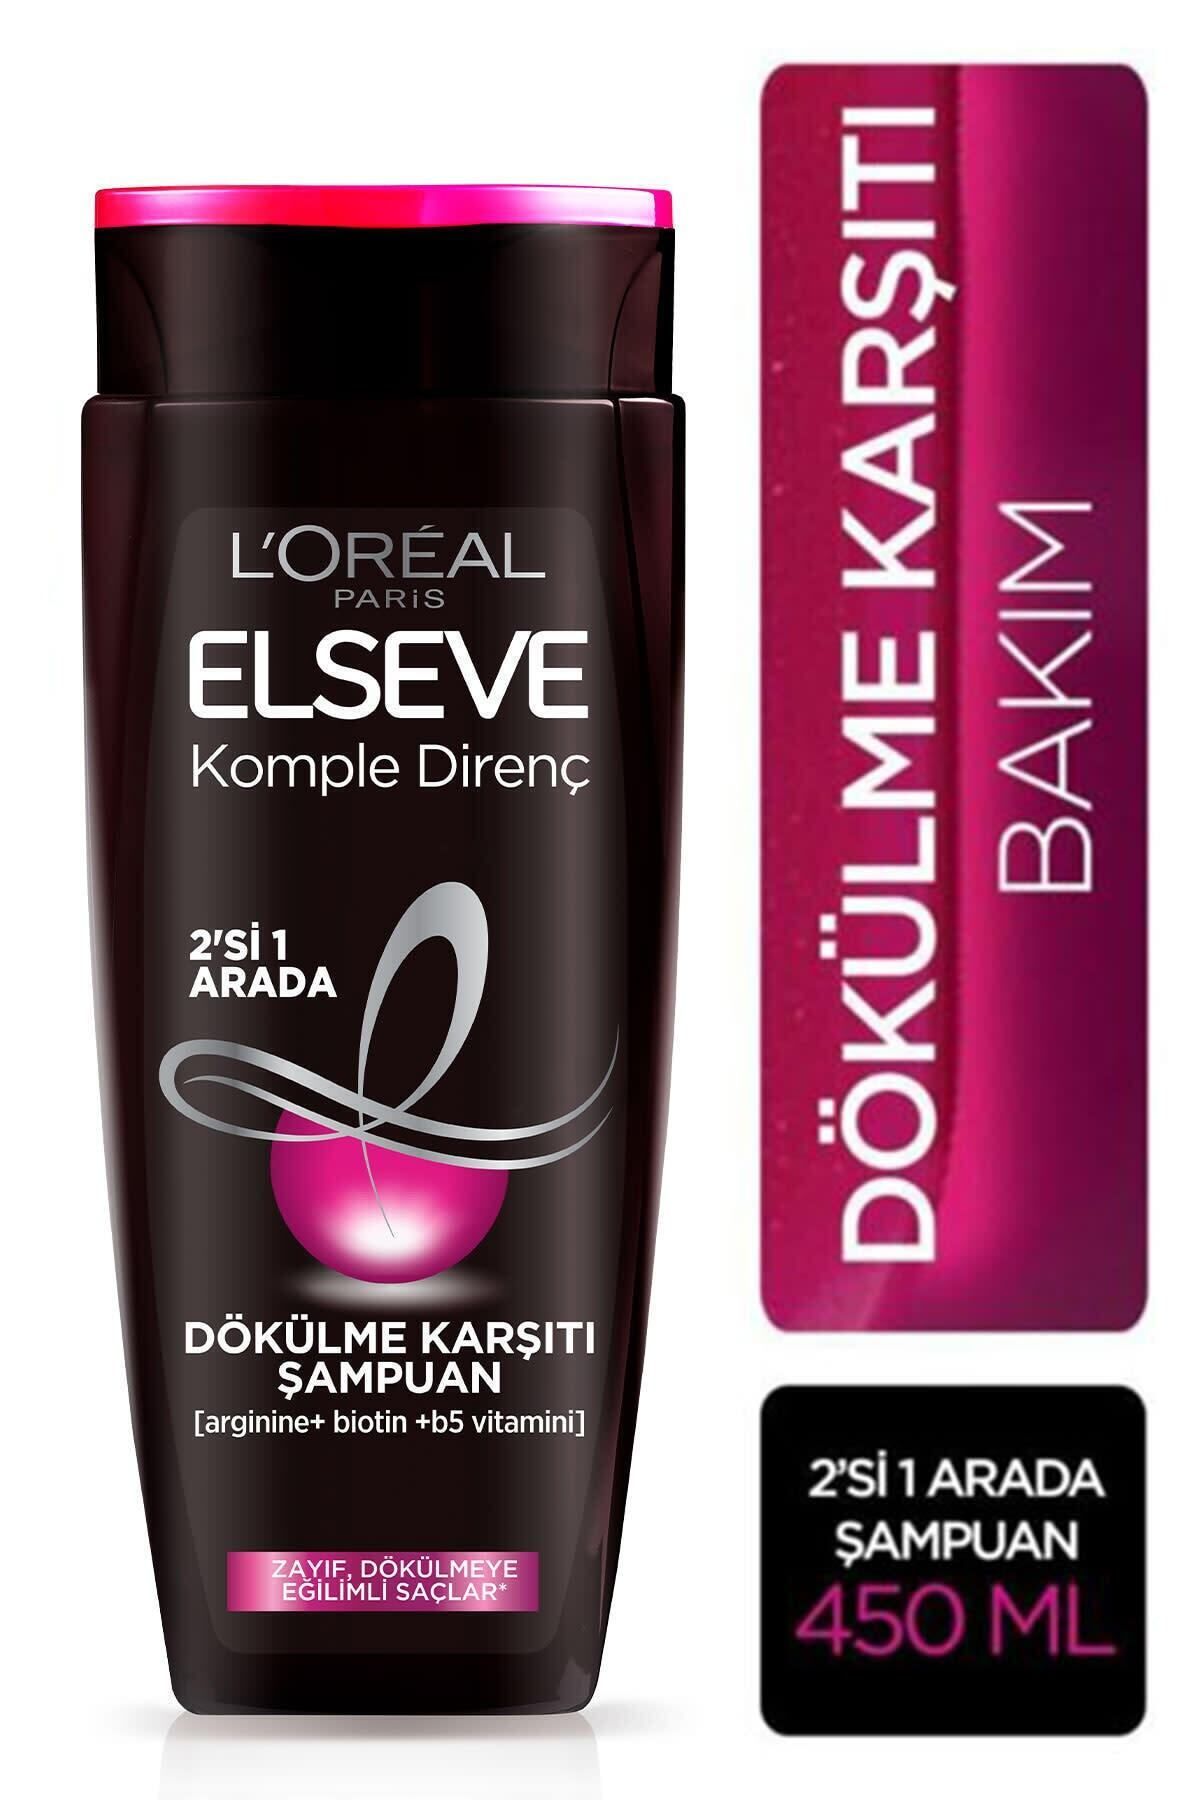 Elseve L'oréal Paris Komple Direnç Dökülme Karşıtı 2'si 1 Arada Şampuan 450 ml